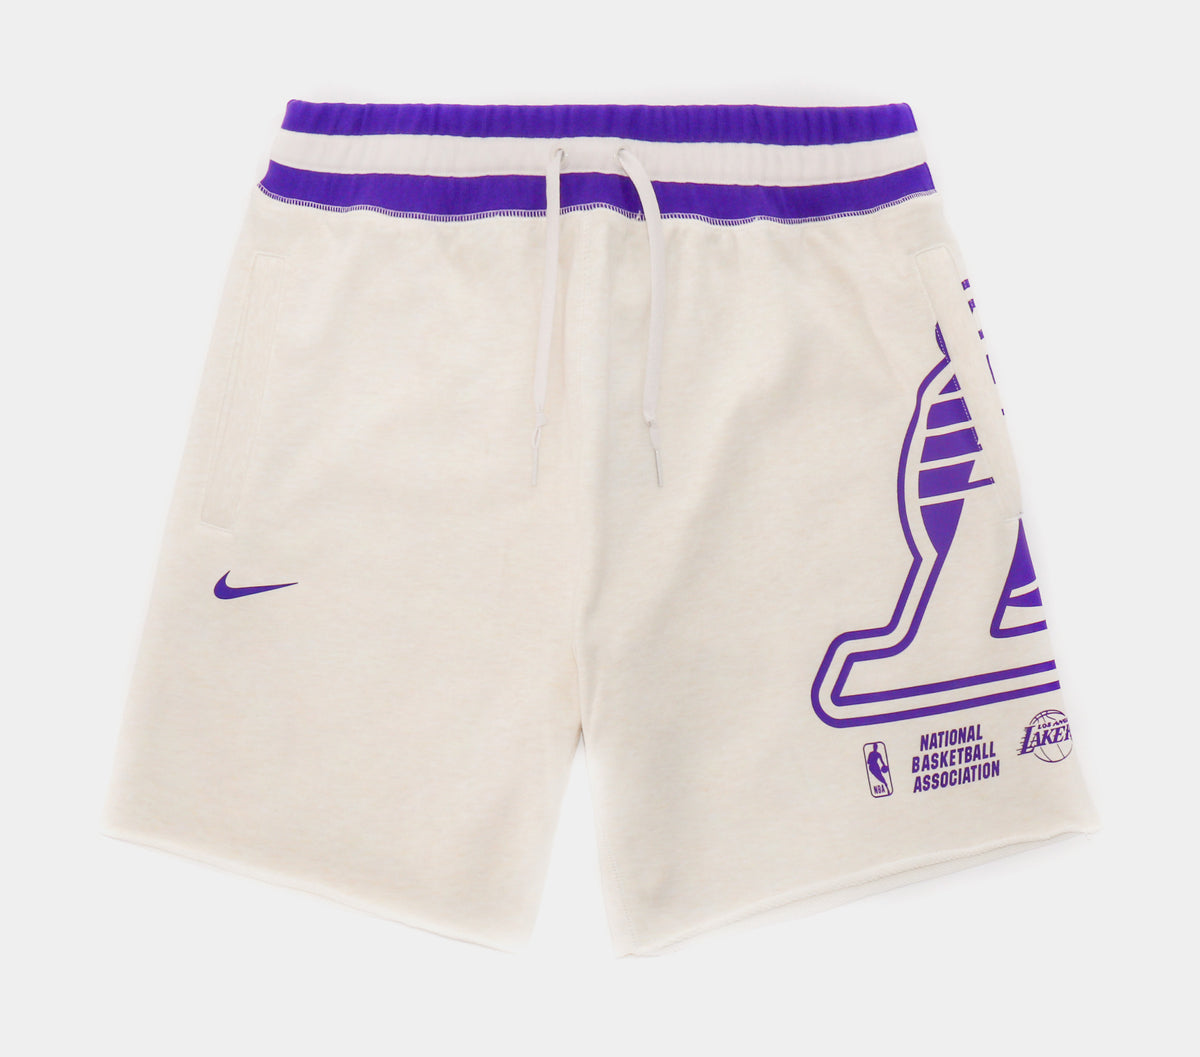 Nike Retro Basketball Shorts Los Angeles Lakers Purple DB1802-504 US XXXL